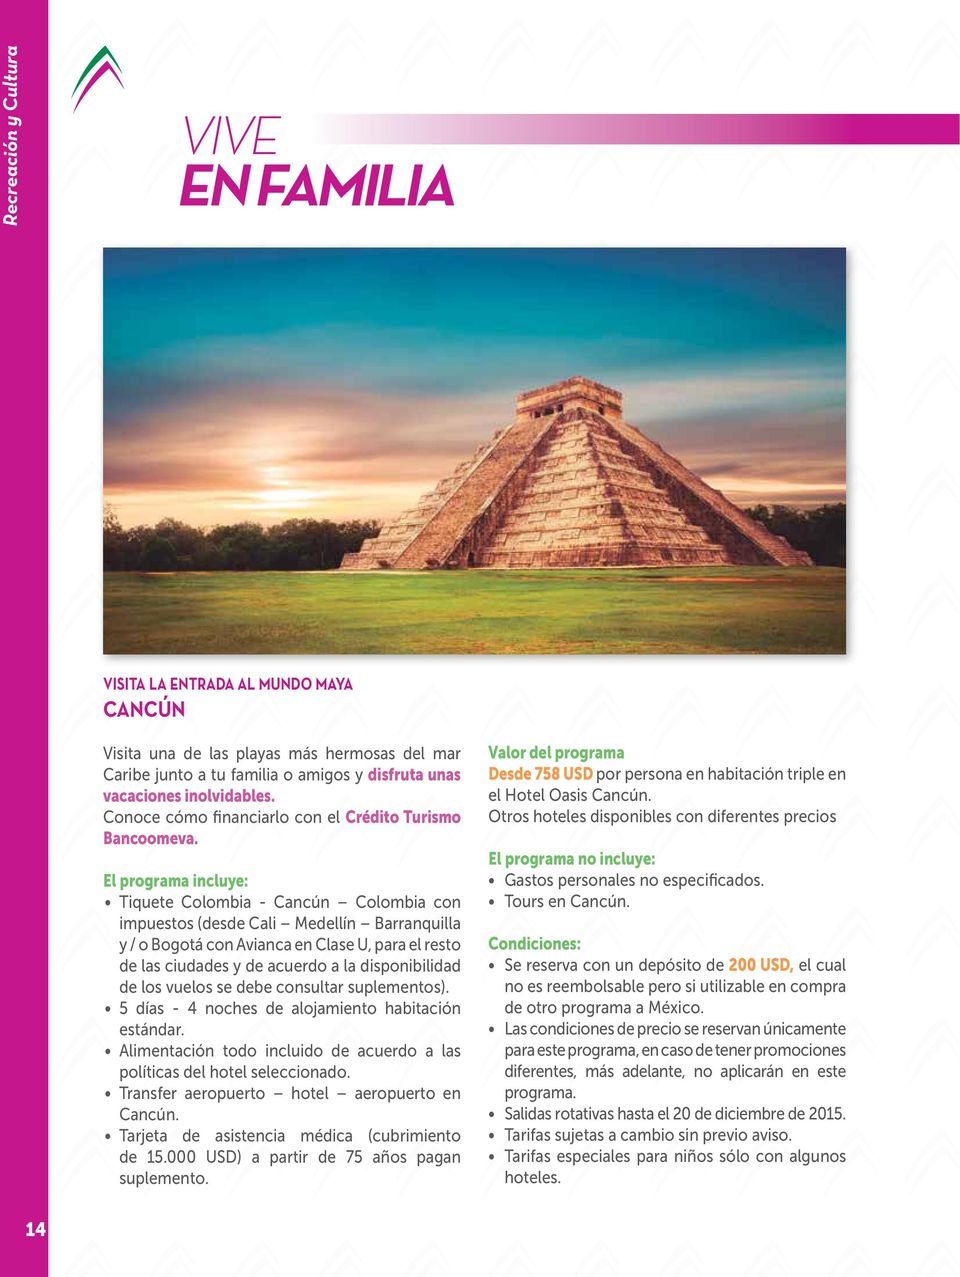 El programa incluye: Tiquete Colombia - Cancún Colombia con impuestos (desde Cali Medellín Barranquilla y / o Bogotá con Avianca en Clase U, para el resto de las ciudades y de acuerdo a la